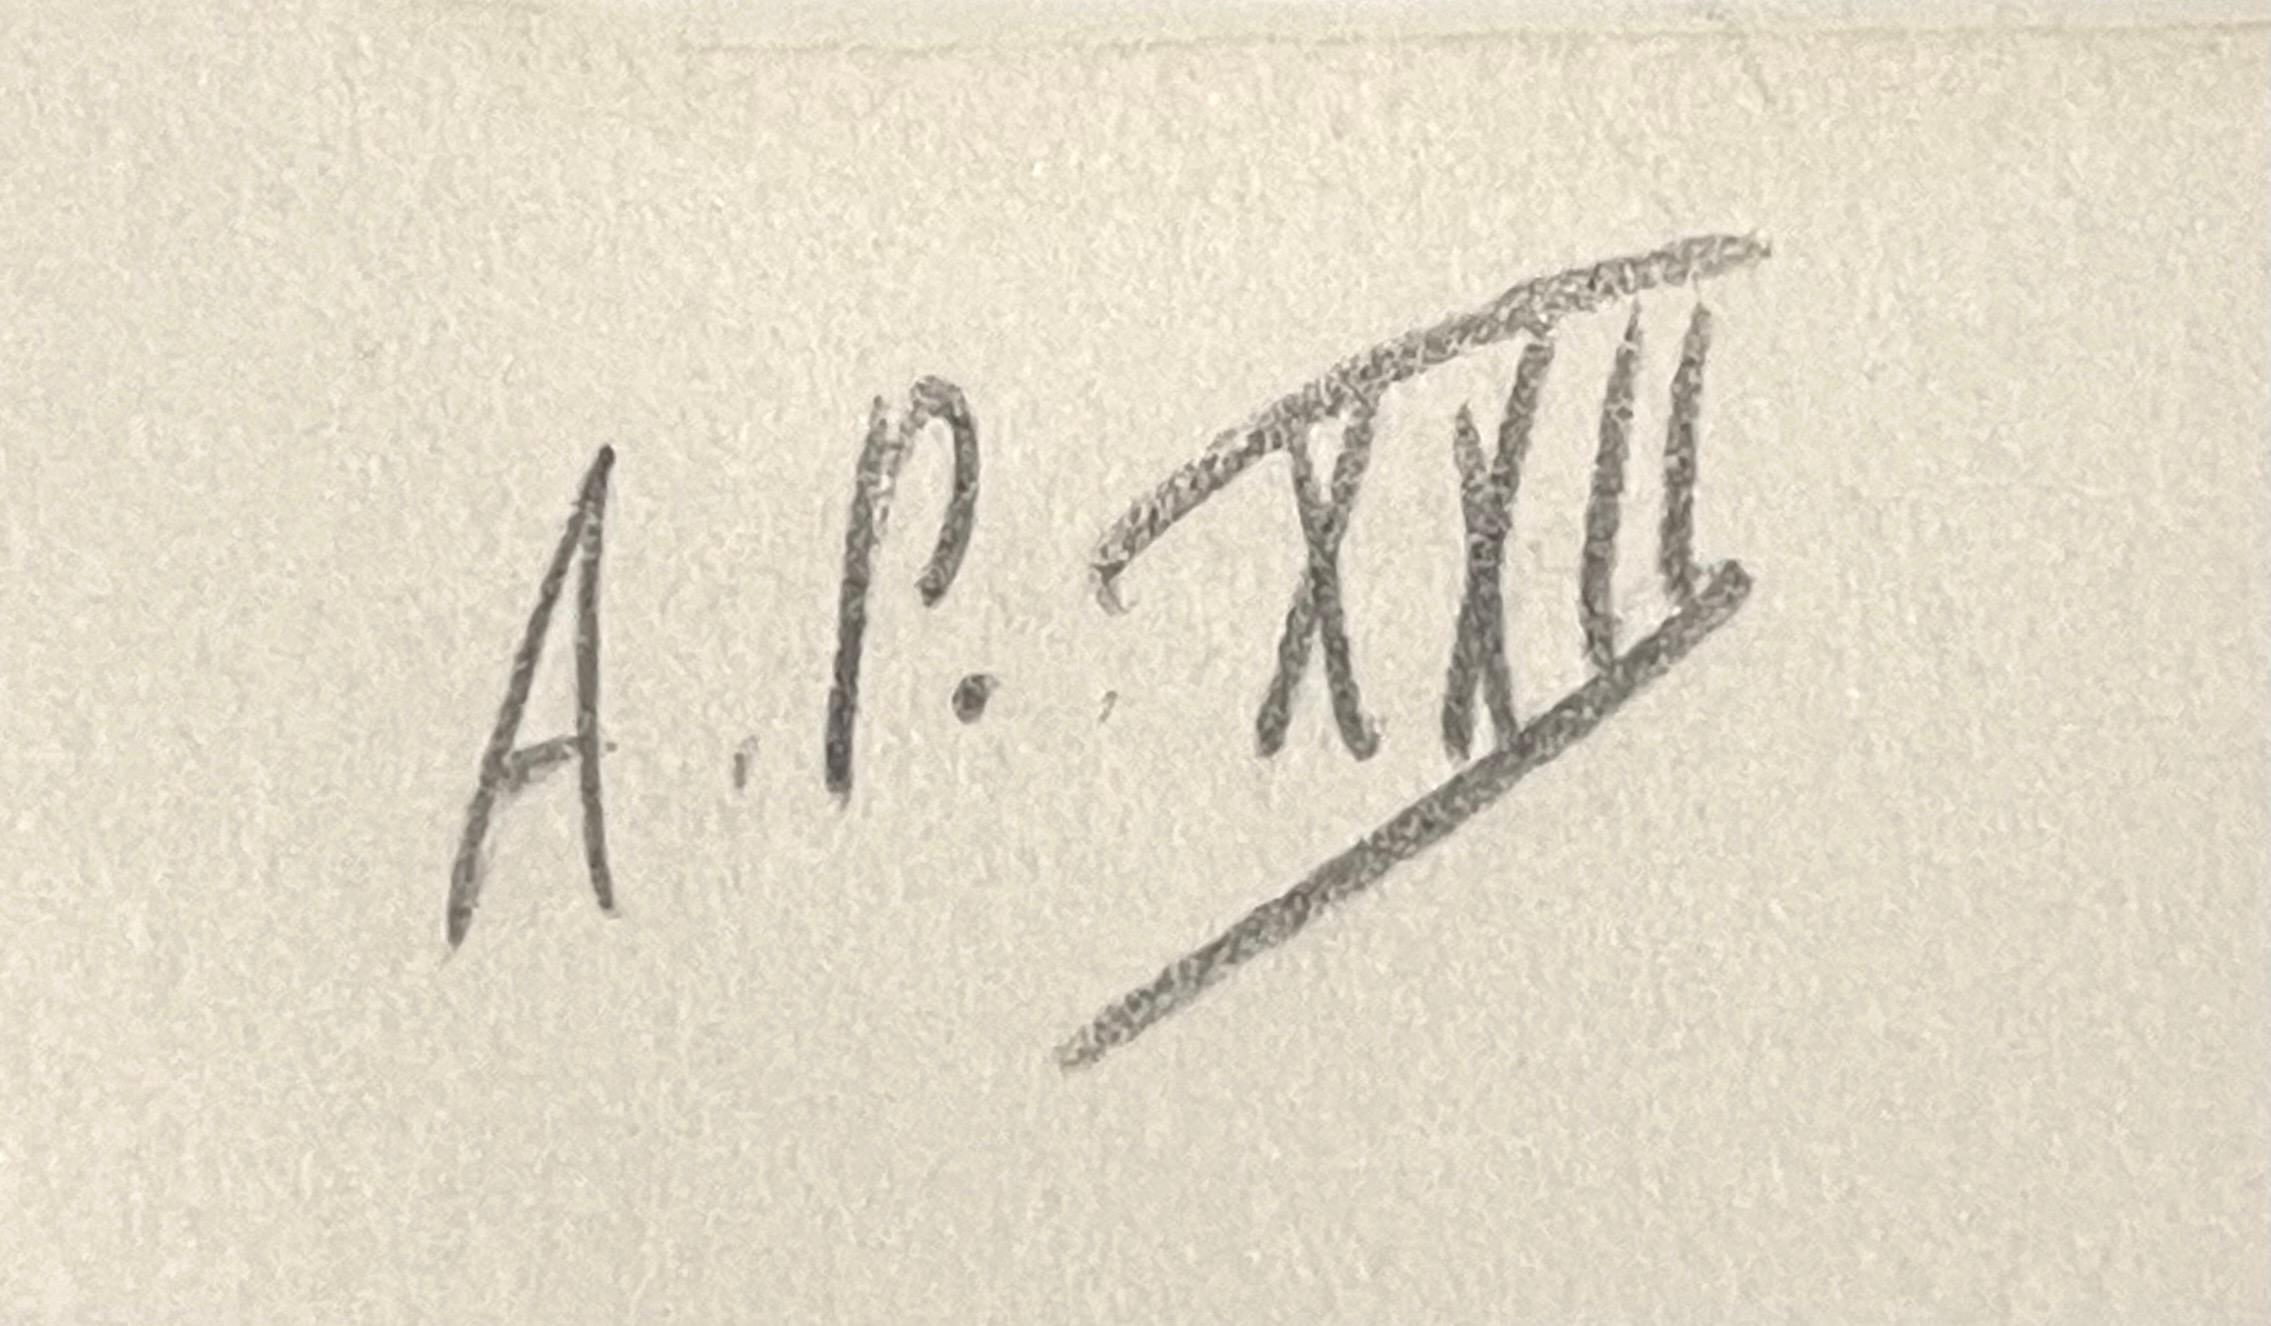 Claes Oldenburg
Figure oscillante, de la conspiration, l'artiste en tant que témoin
Sérigraphie couleur avec encres émaillées sur papier coton CM Fabriano filigrané 100% chiffon
Signé et numéroté par l'artiste, au recto ; porte le cachet distinctif